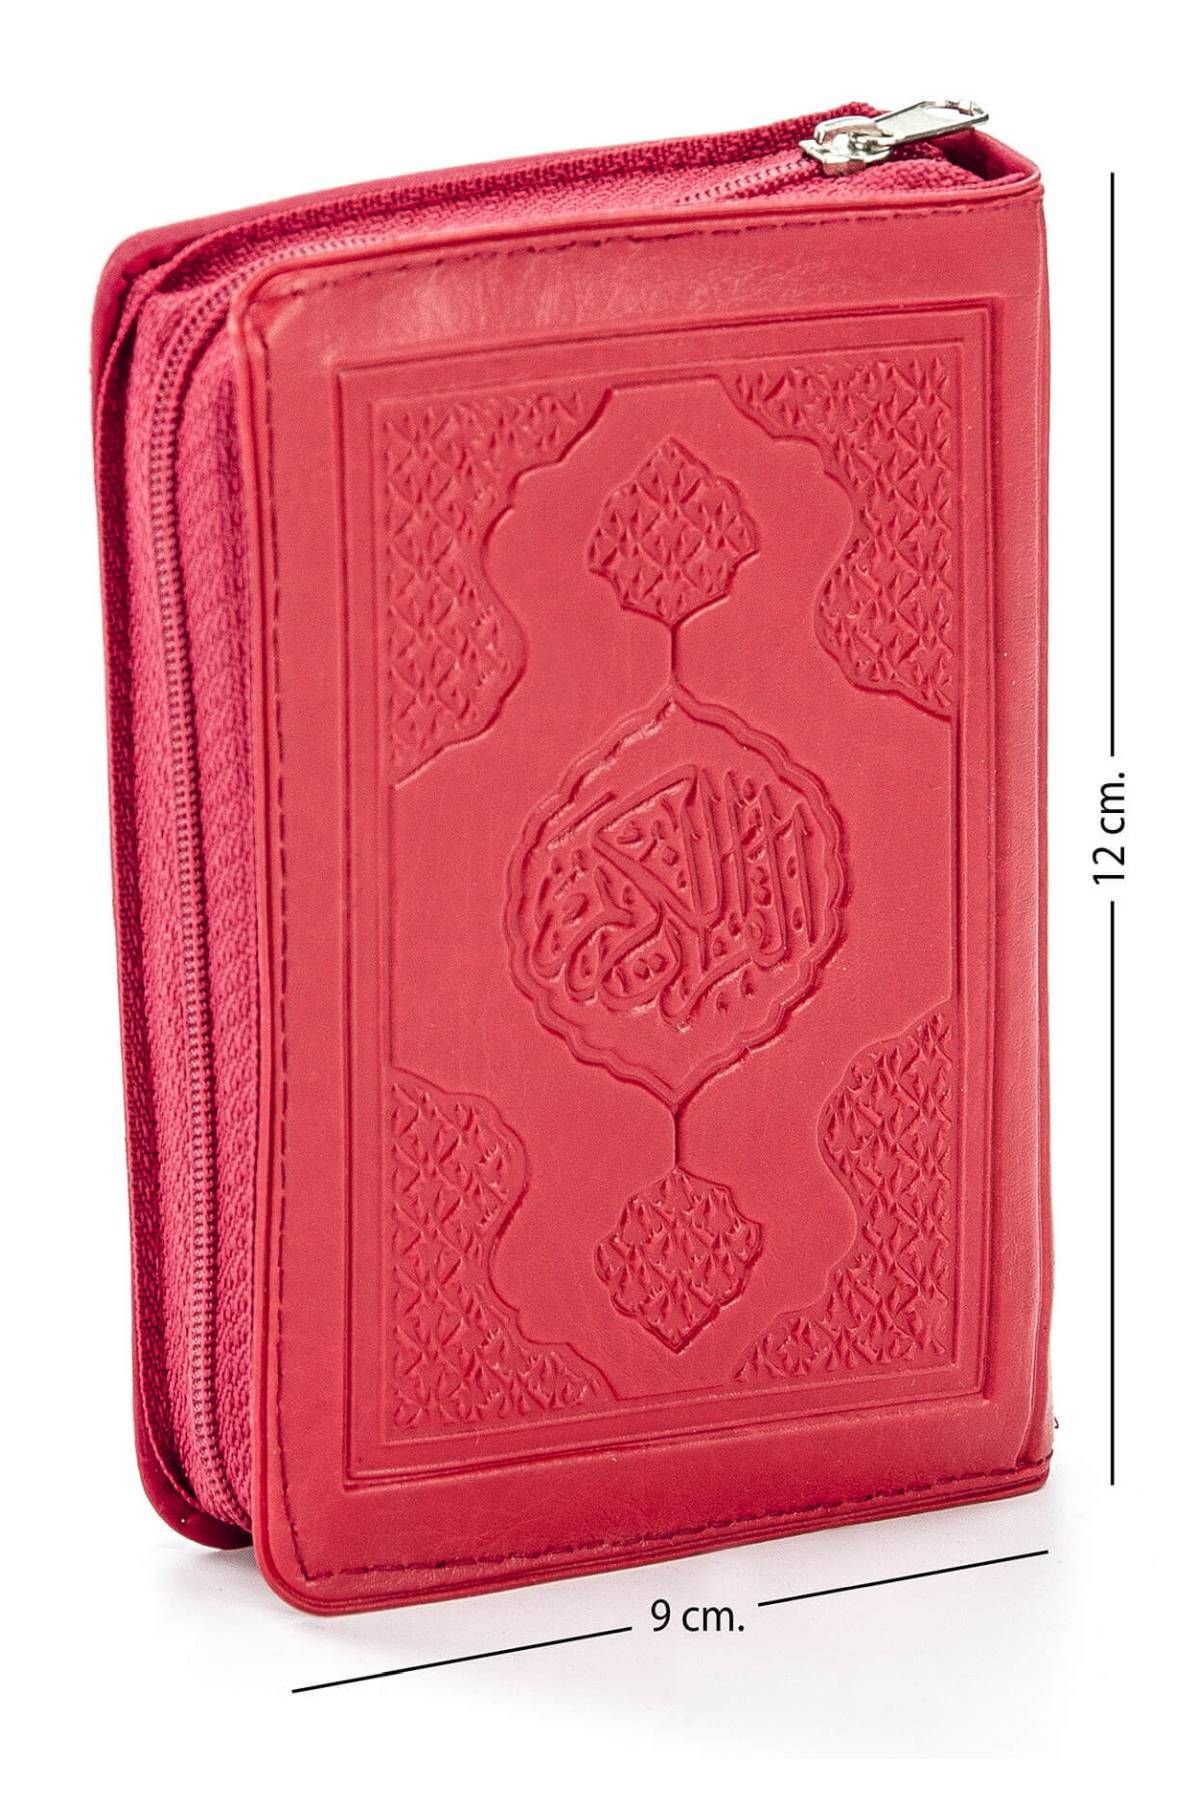 Ayfa Press Publishing Quran — простой арабский язык — с сумкой из искусственной кожи — карманный размер — бордовый красный — с компьютерной каллиграфией 447146